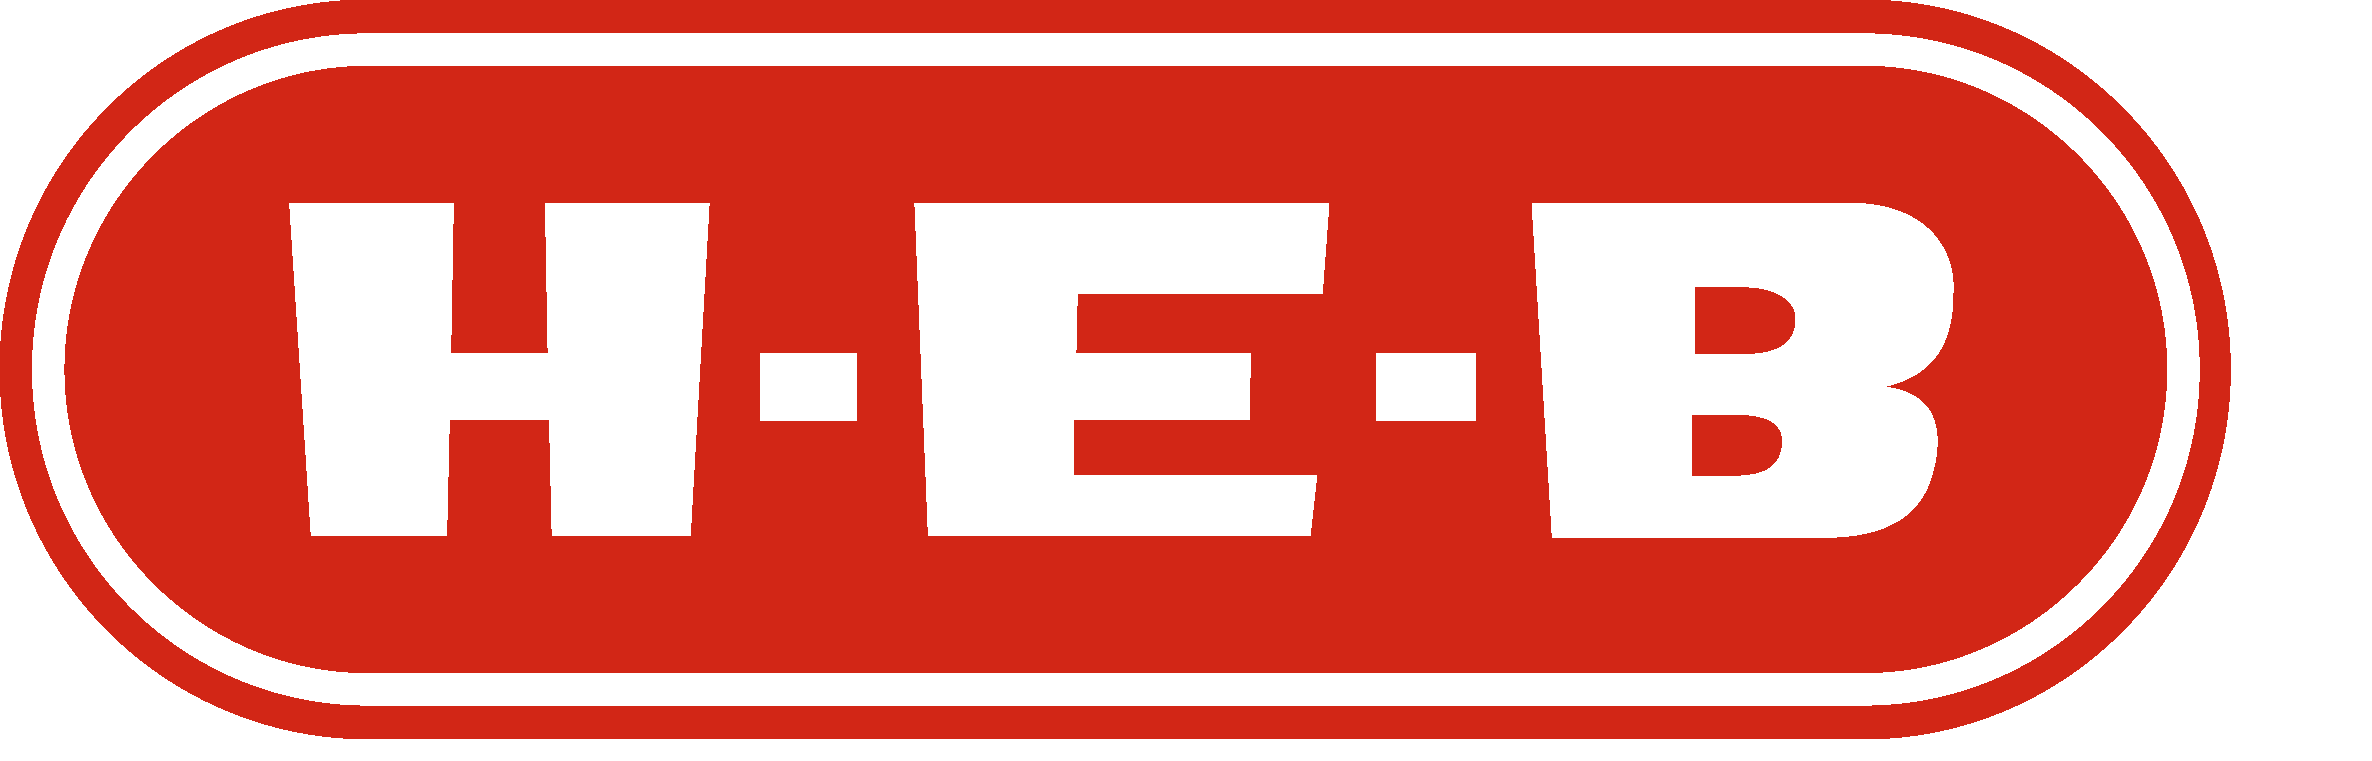 HEB Logo [H E B] png